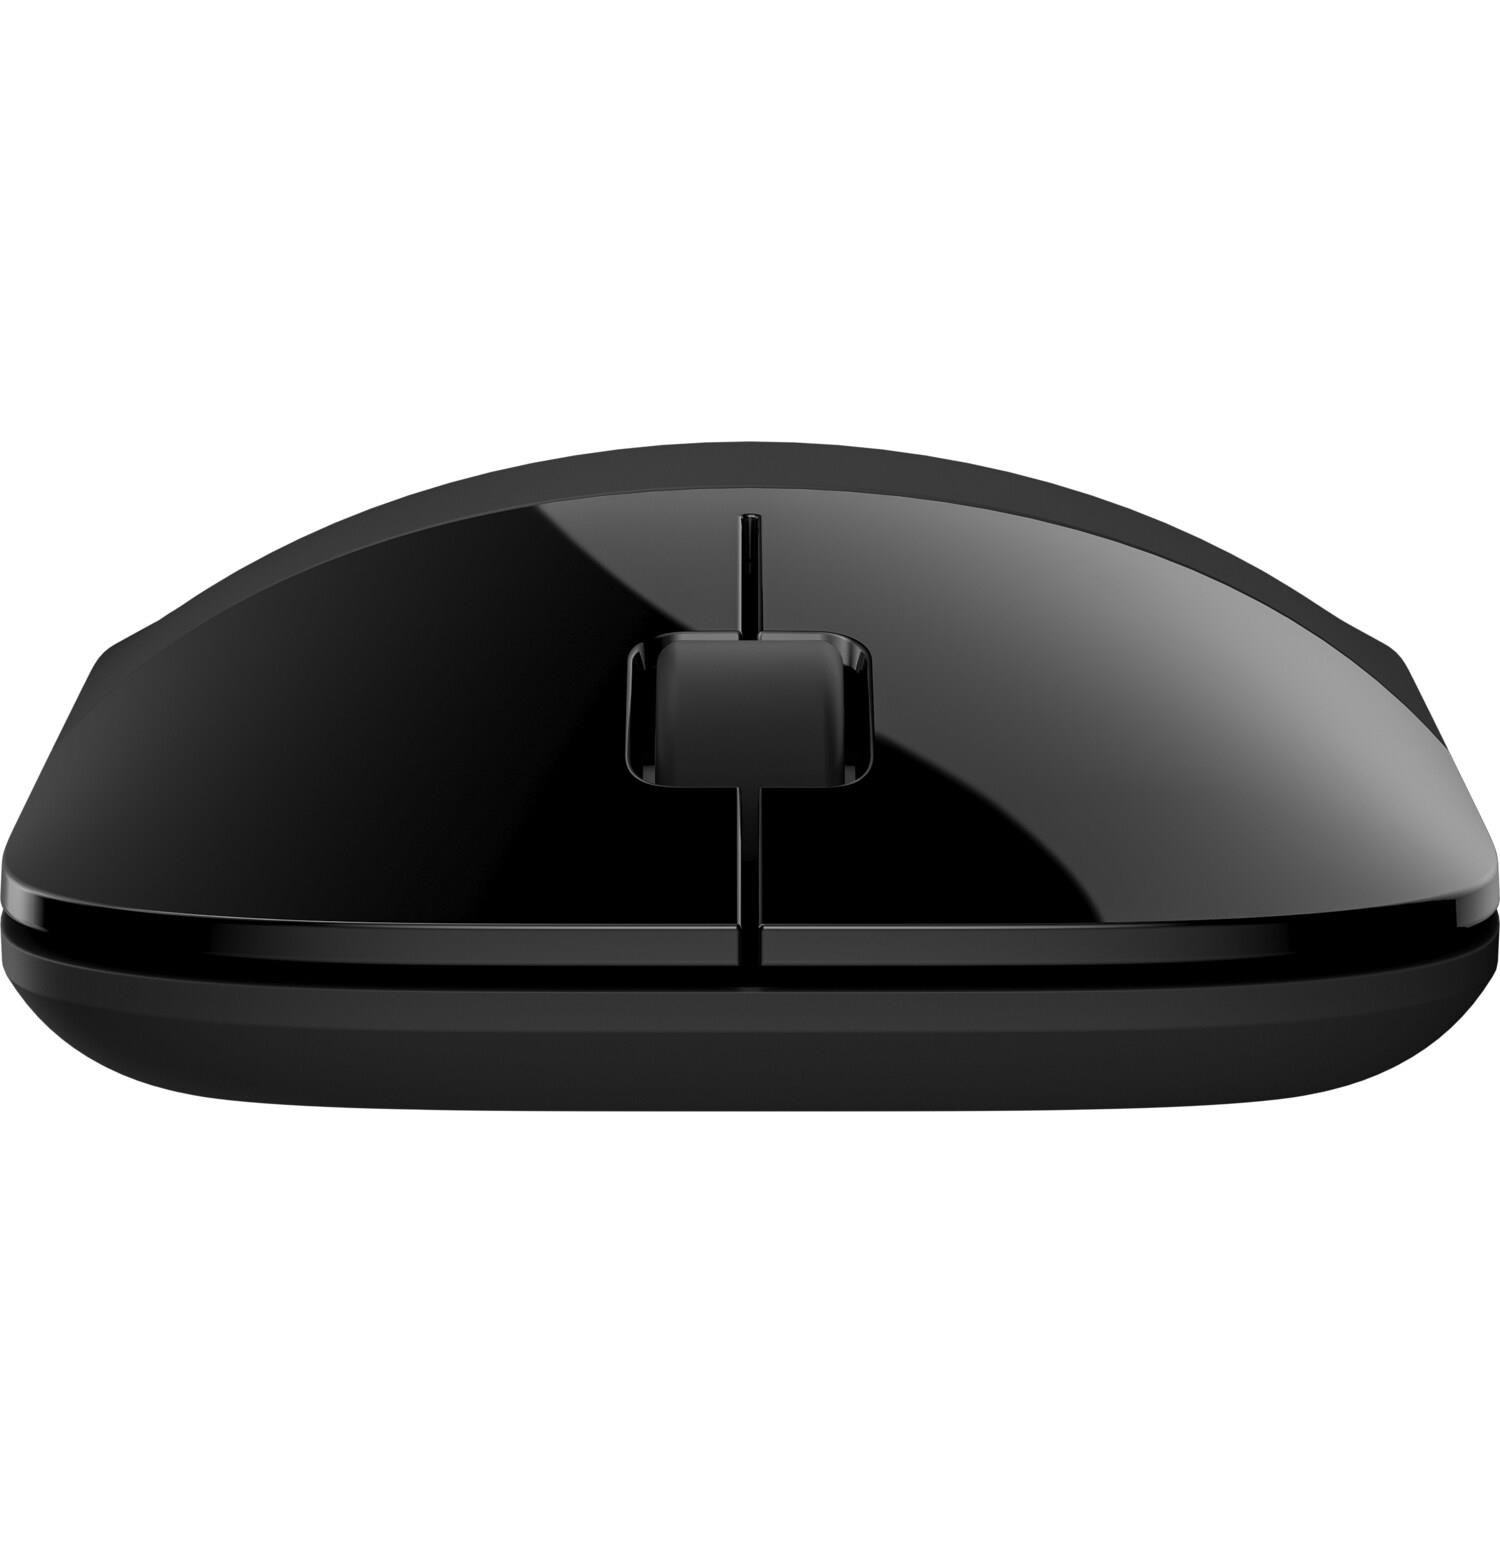 HP Z3700 Dual Black Wireless Mouse EURO - bezdrátová myš2 